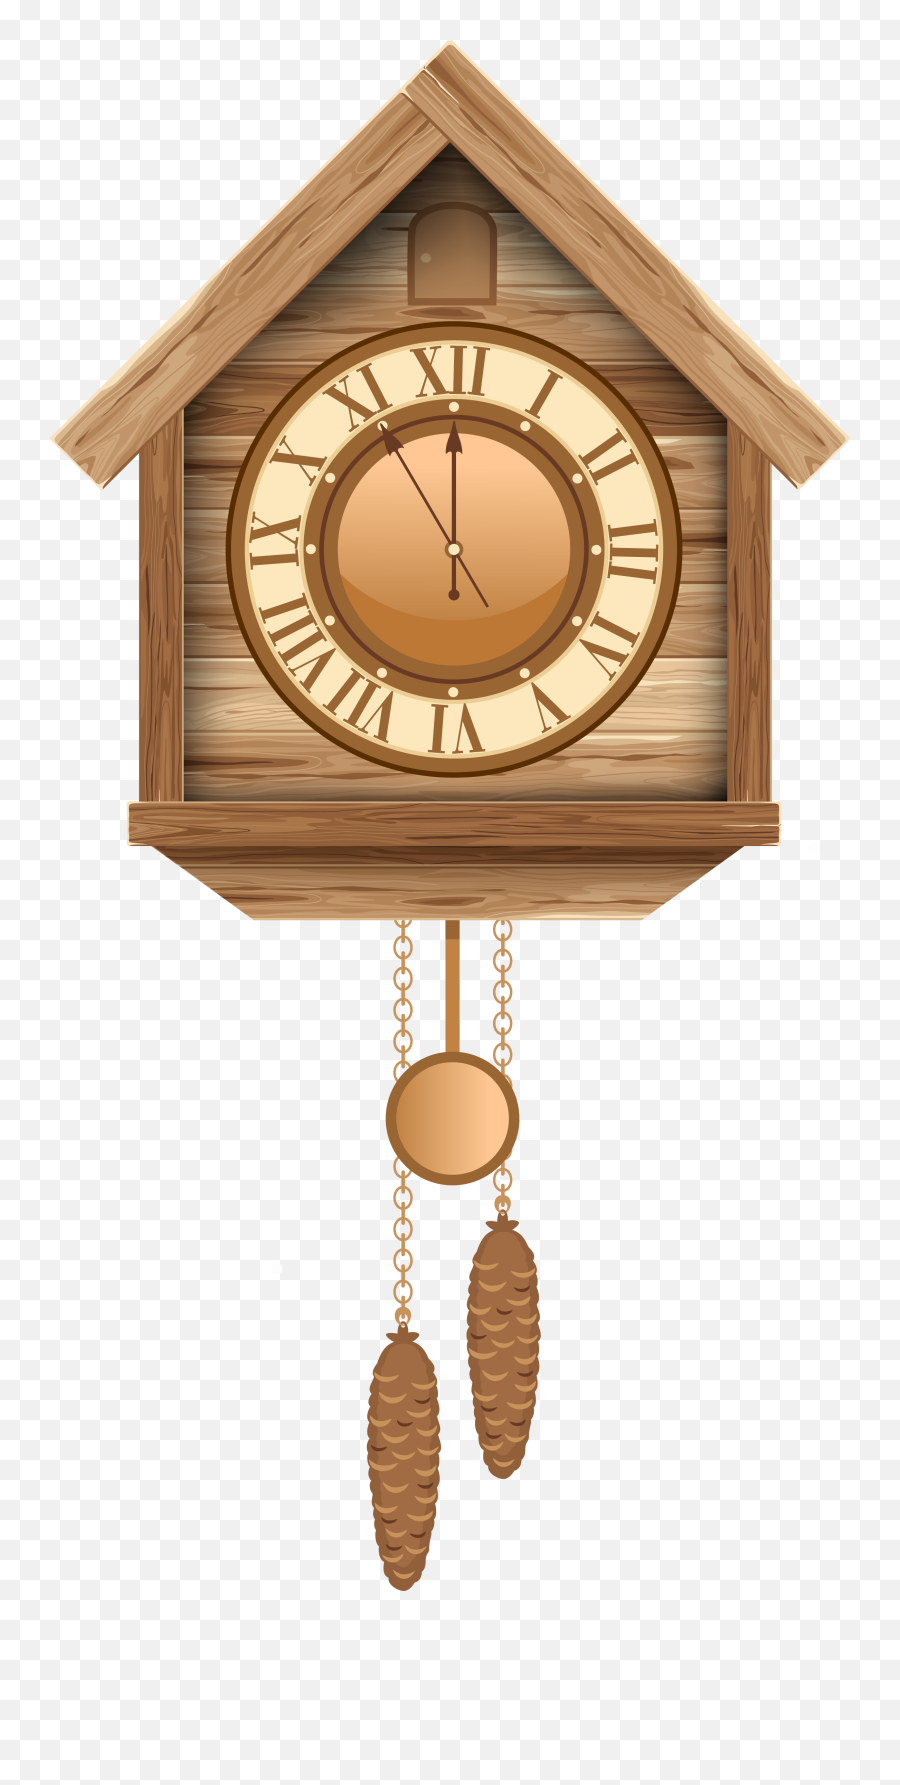 Cuckoo Clock Png Clip Art - Transparent Cuckoo Clock Png,Cartoon Clock Png